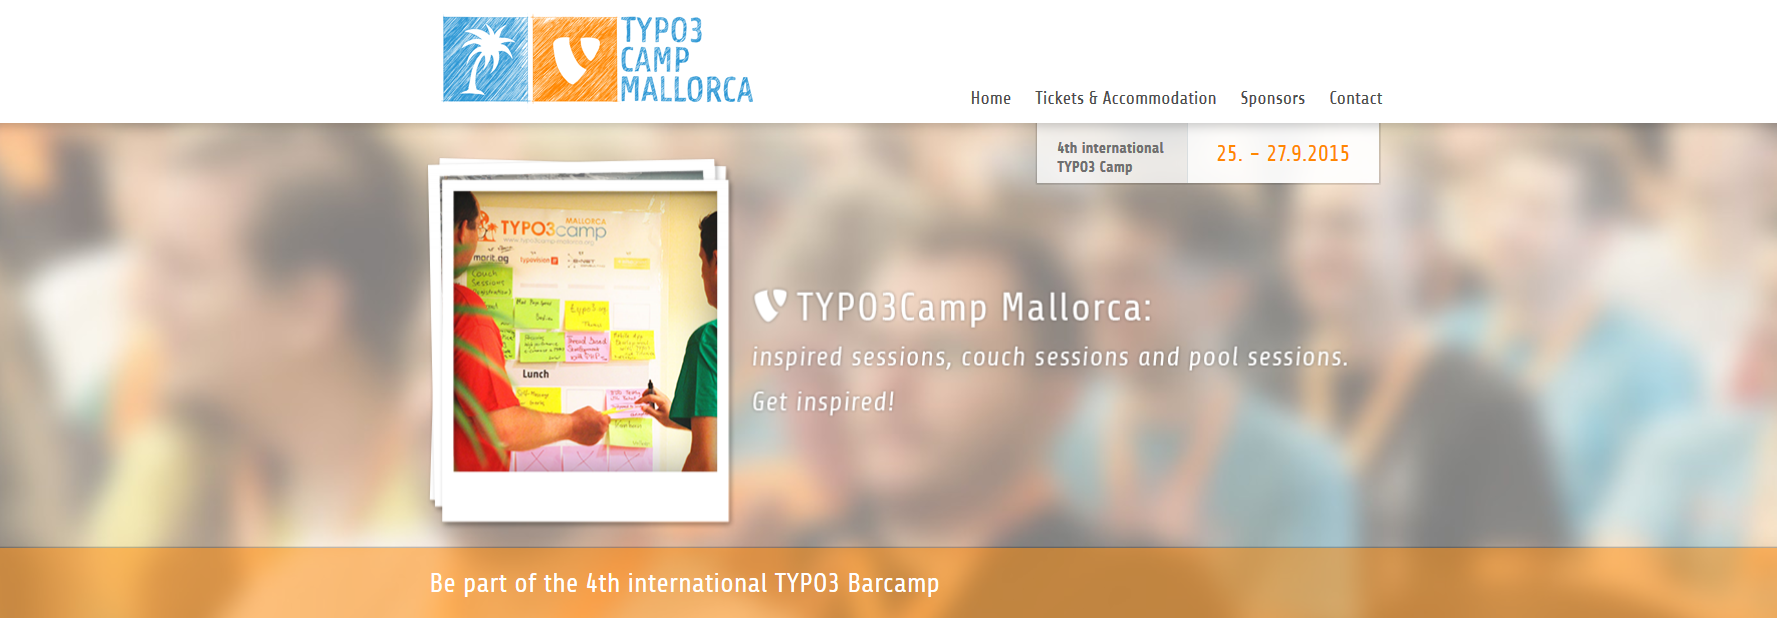 Typo3 Camp Mallorca